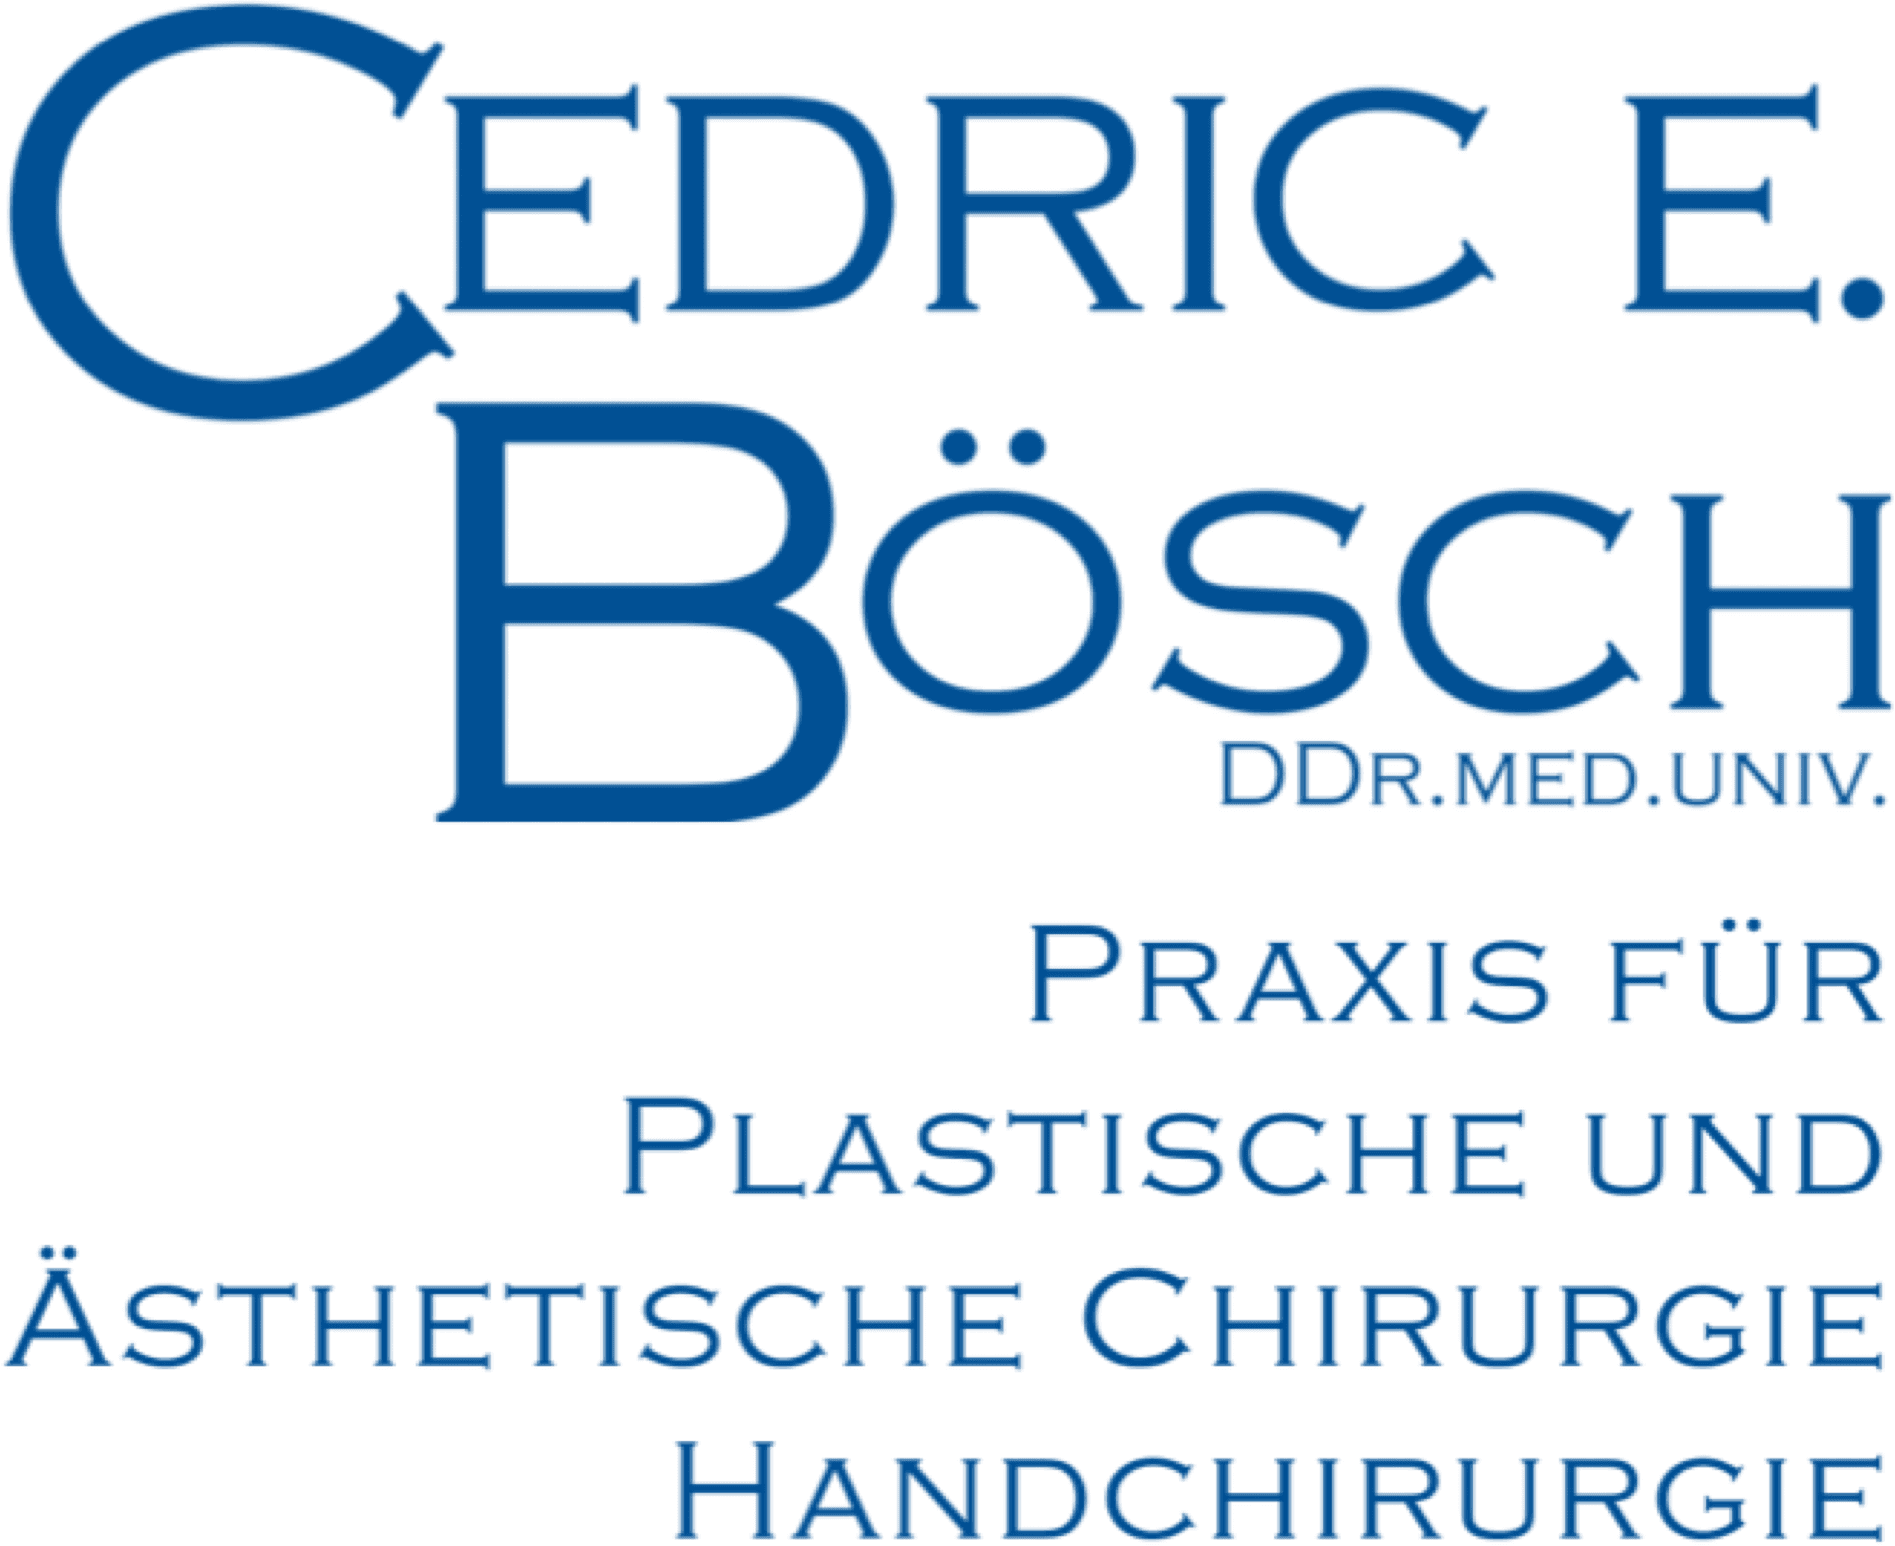 Logo DDr. Cedric E. Bösch